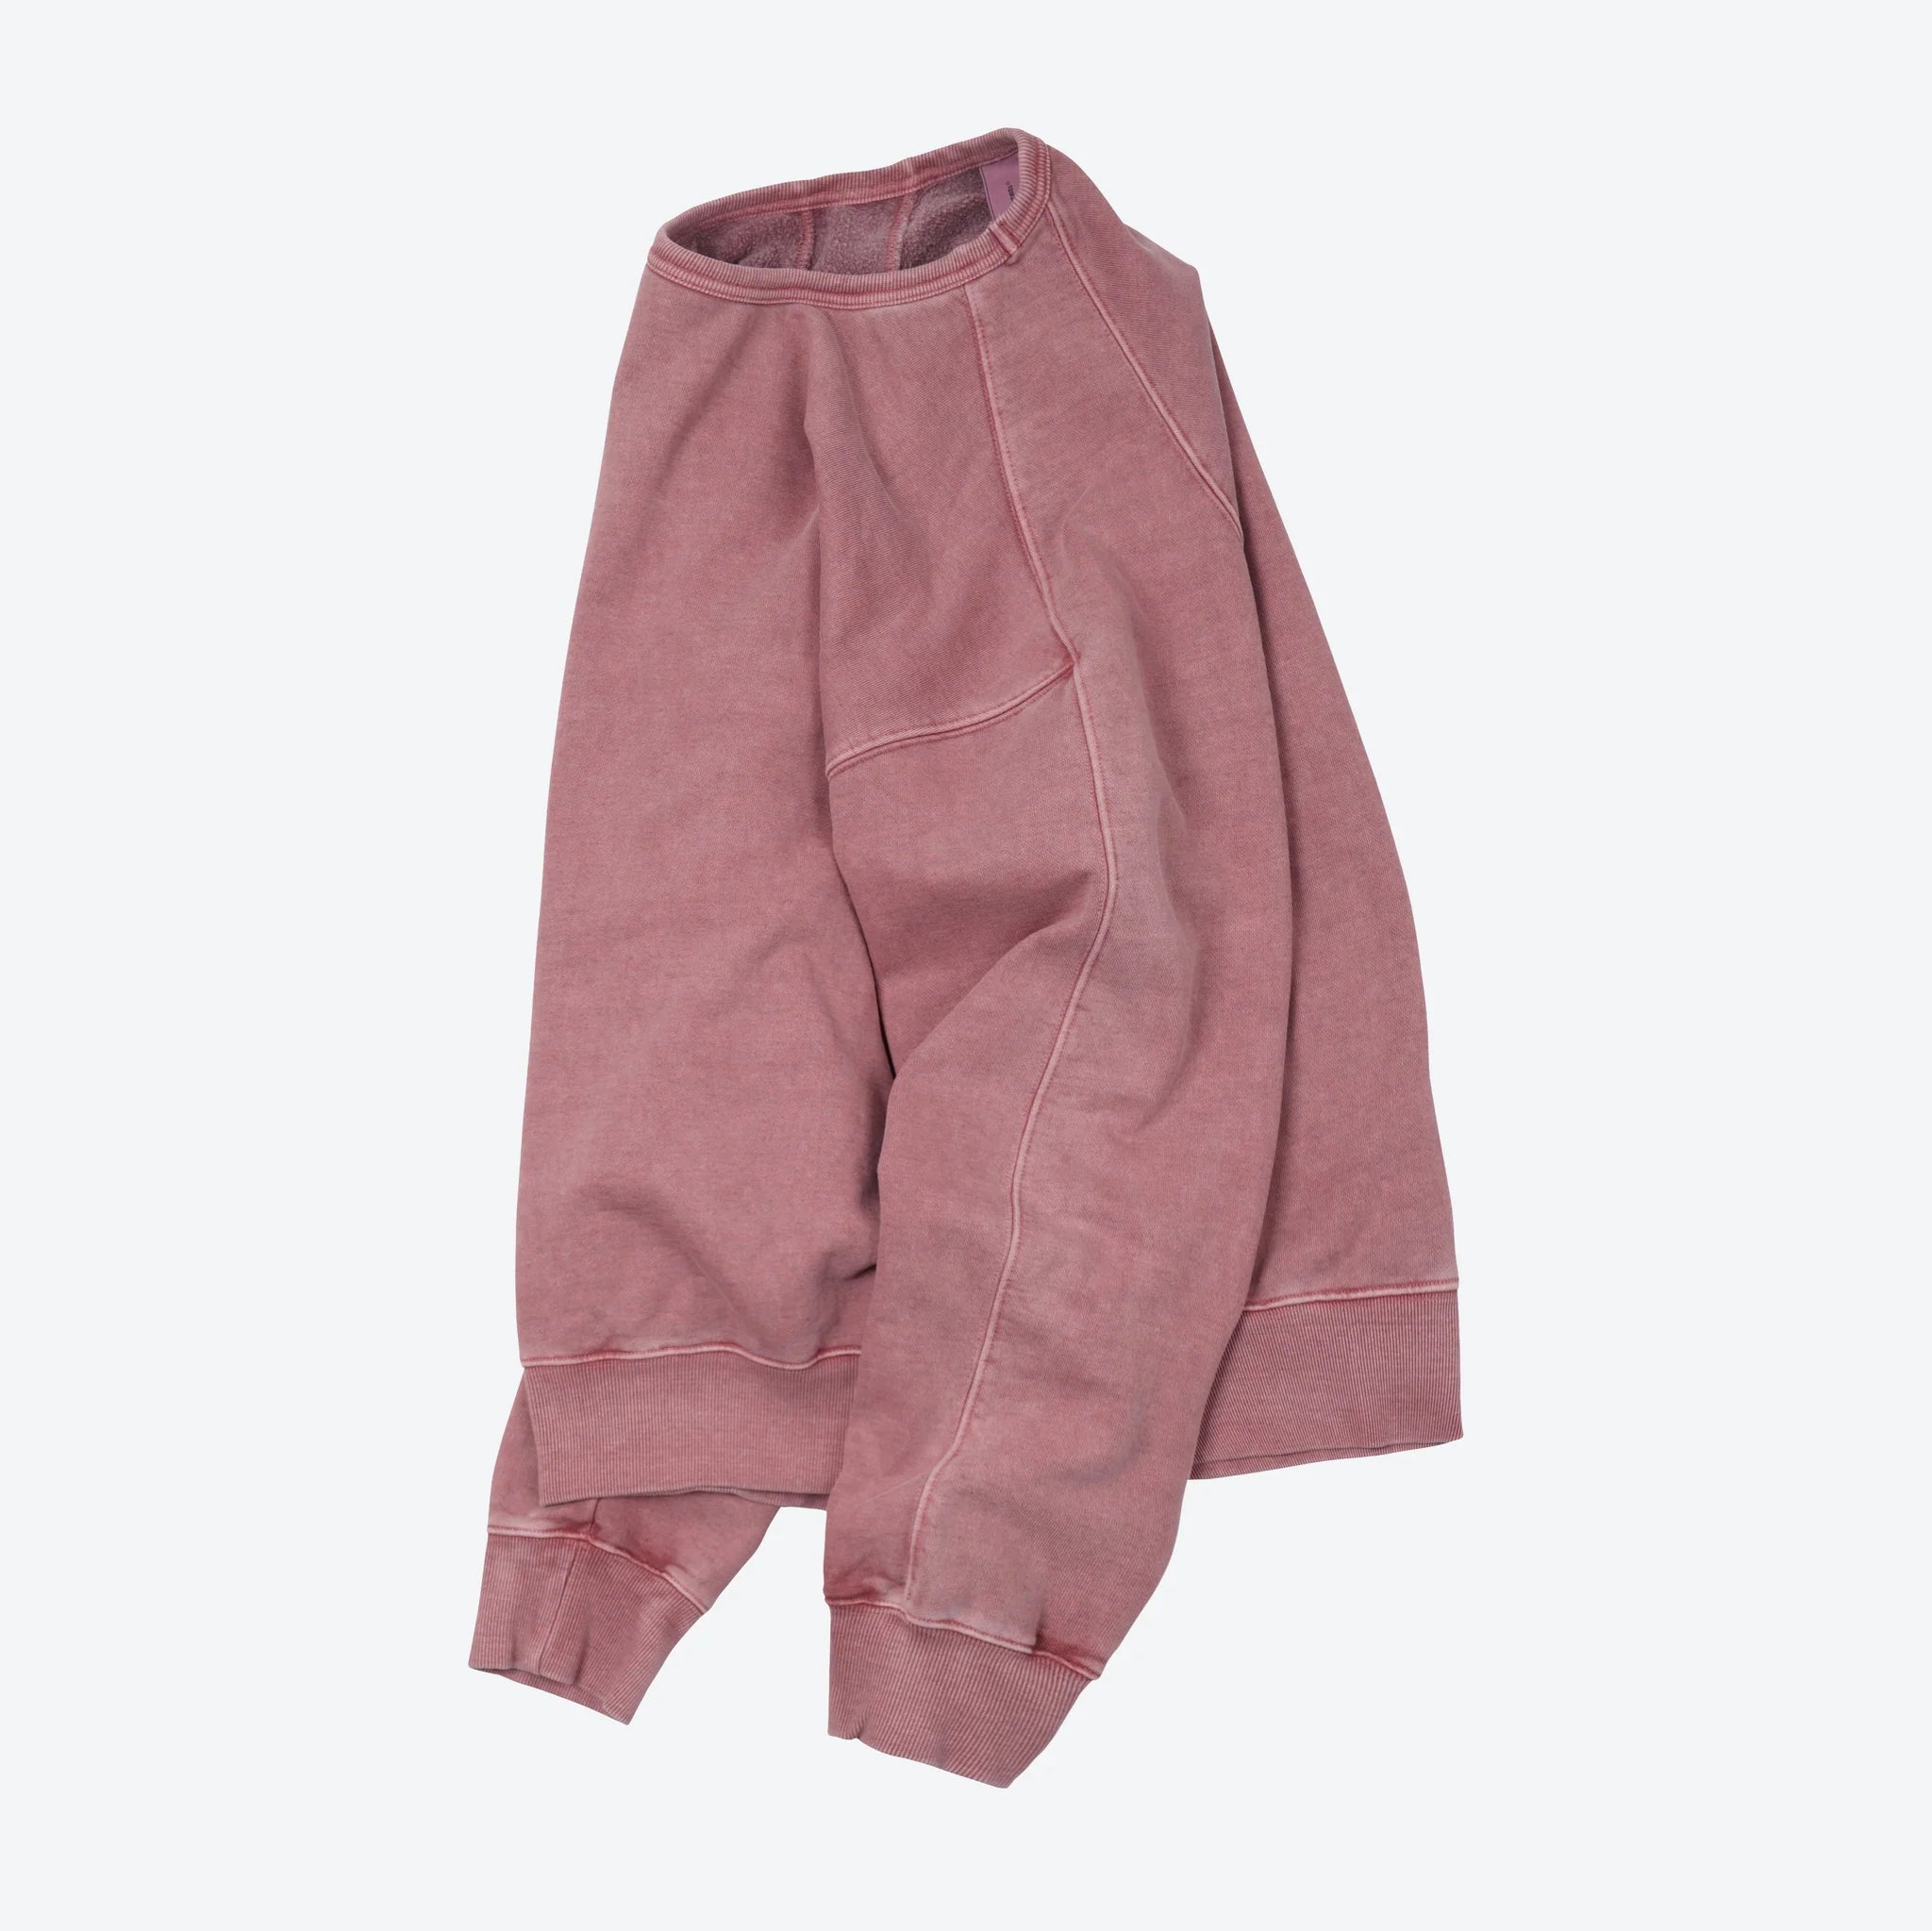 OG Pigment-Dyed Sweatshirt 003 - Pink